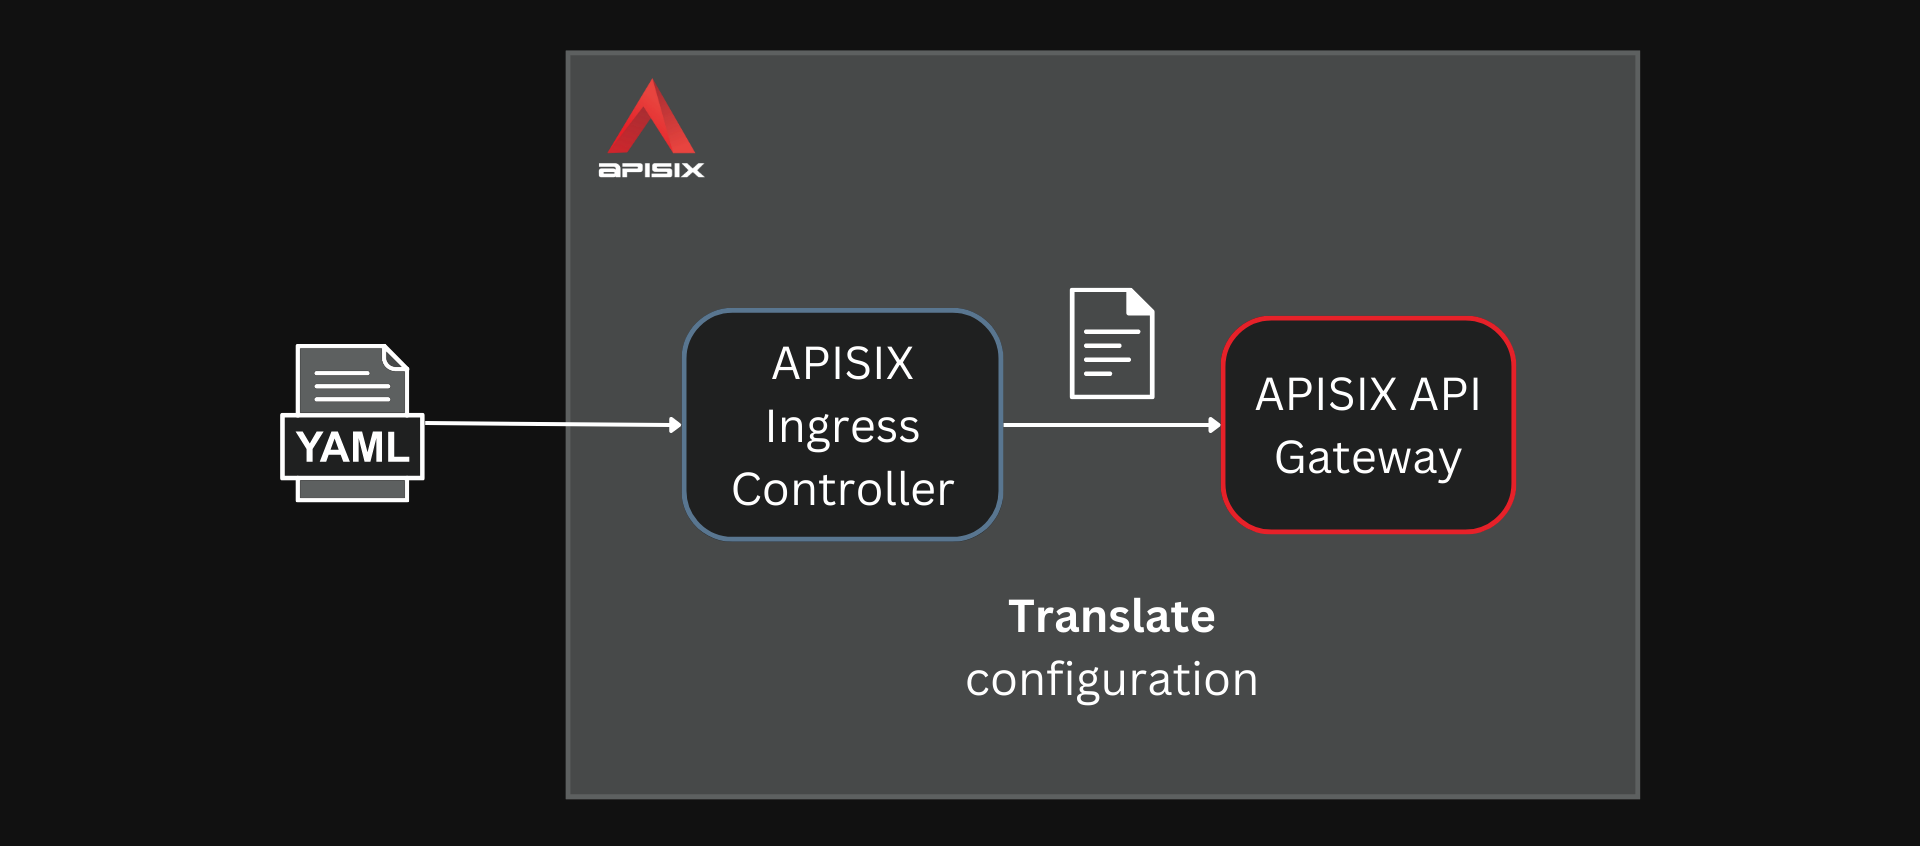 APISIX Ingress controller translates configuration